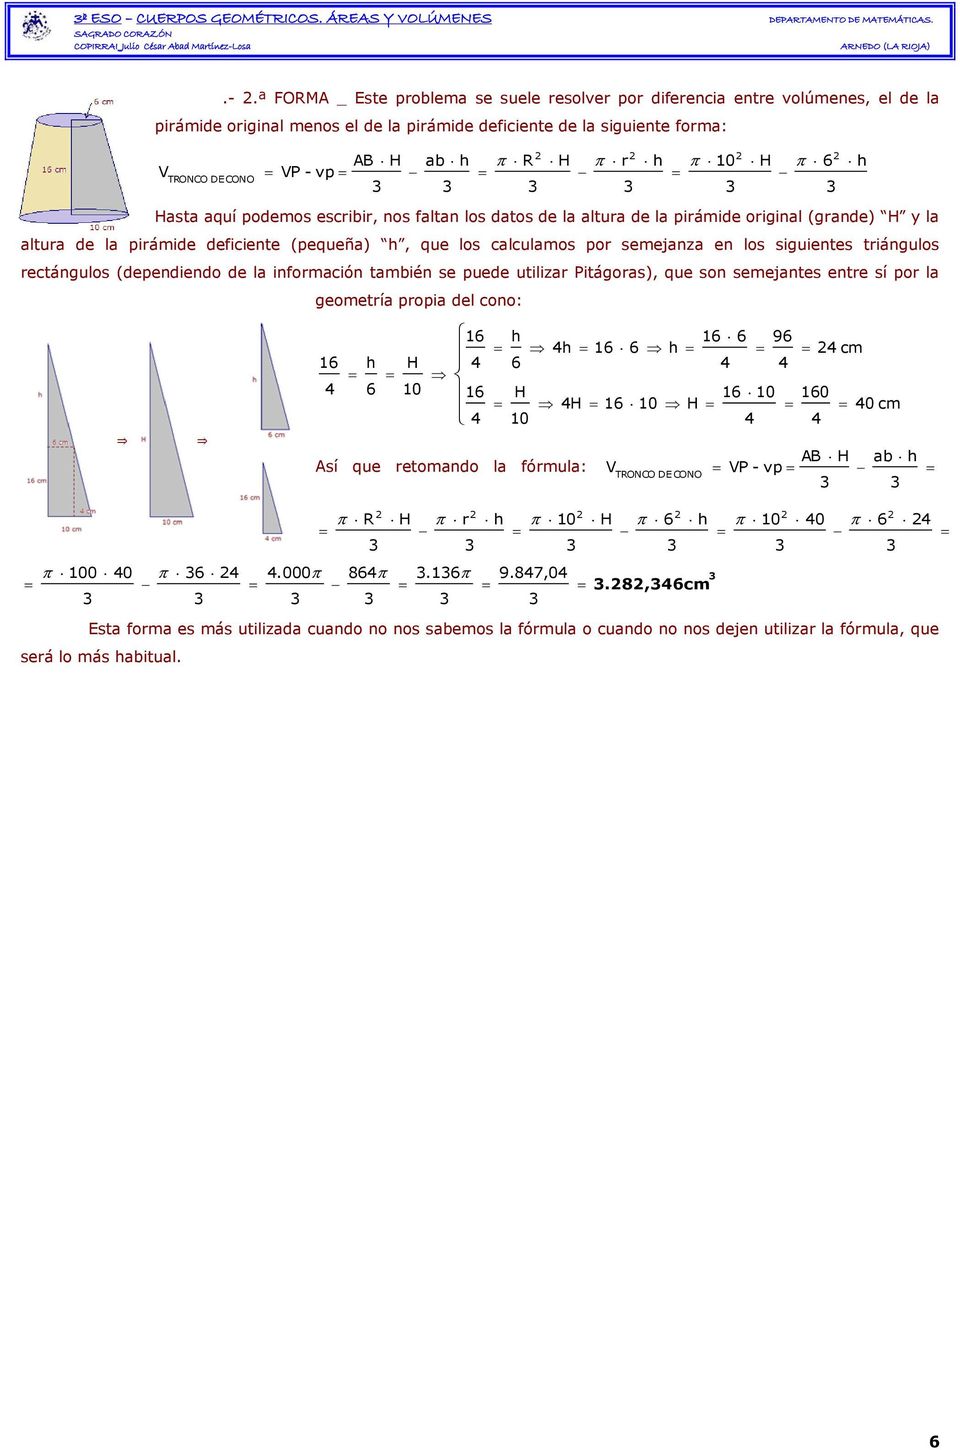 ª FORMA _ Este problema se suele resolver por diferencia entre volúmenes, el de la pirámide original menos el de la pirámide deficiente de la siguiente forma: TRONCO DE CONO AB H ab - vp R H r 10 H 6